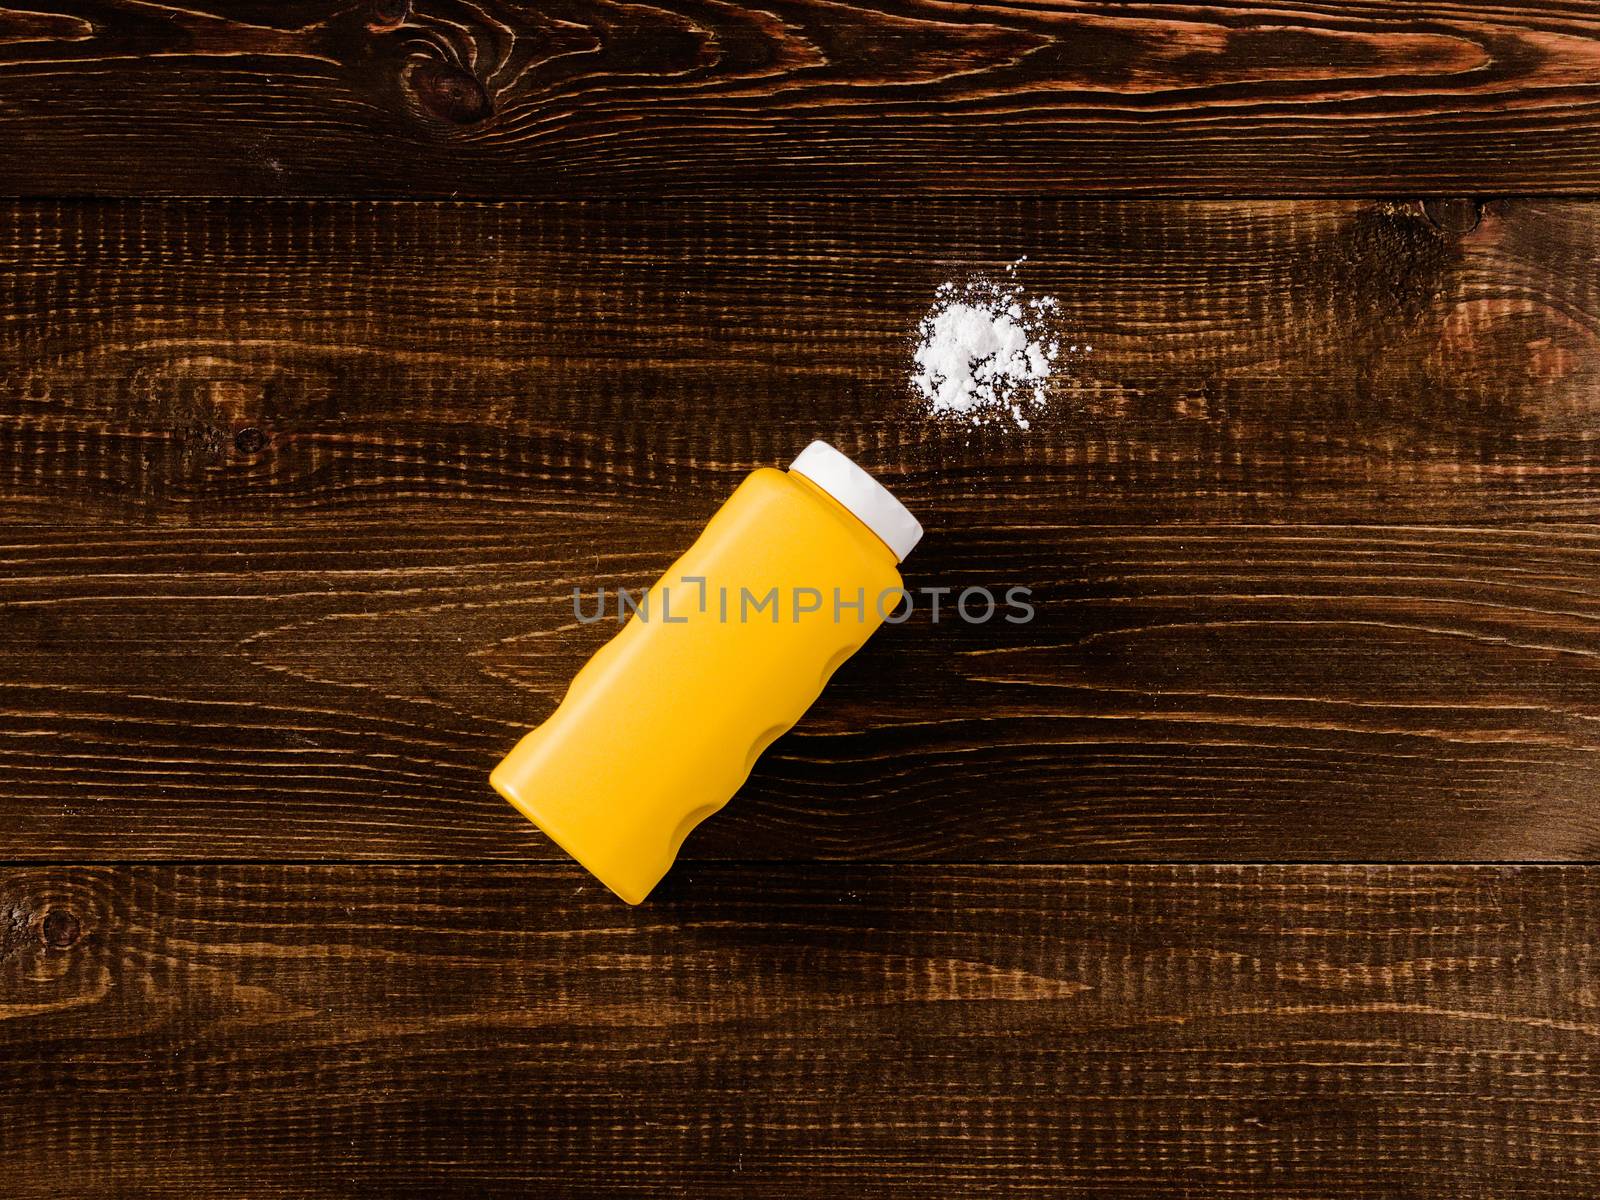 Spilled baby talcum powder on wooden background by fascinadora